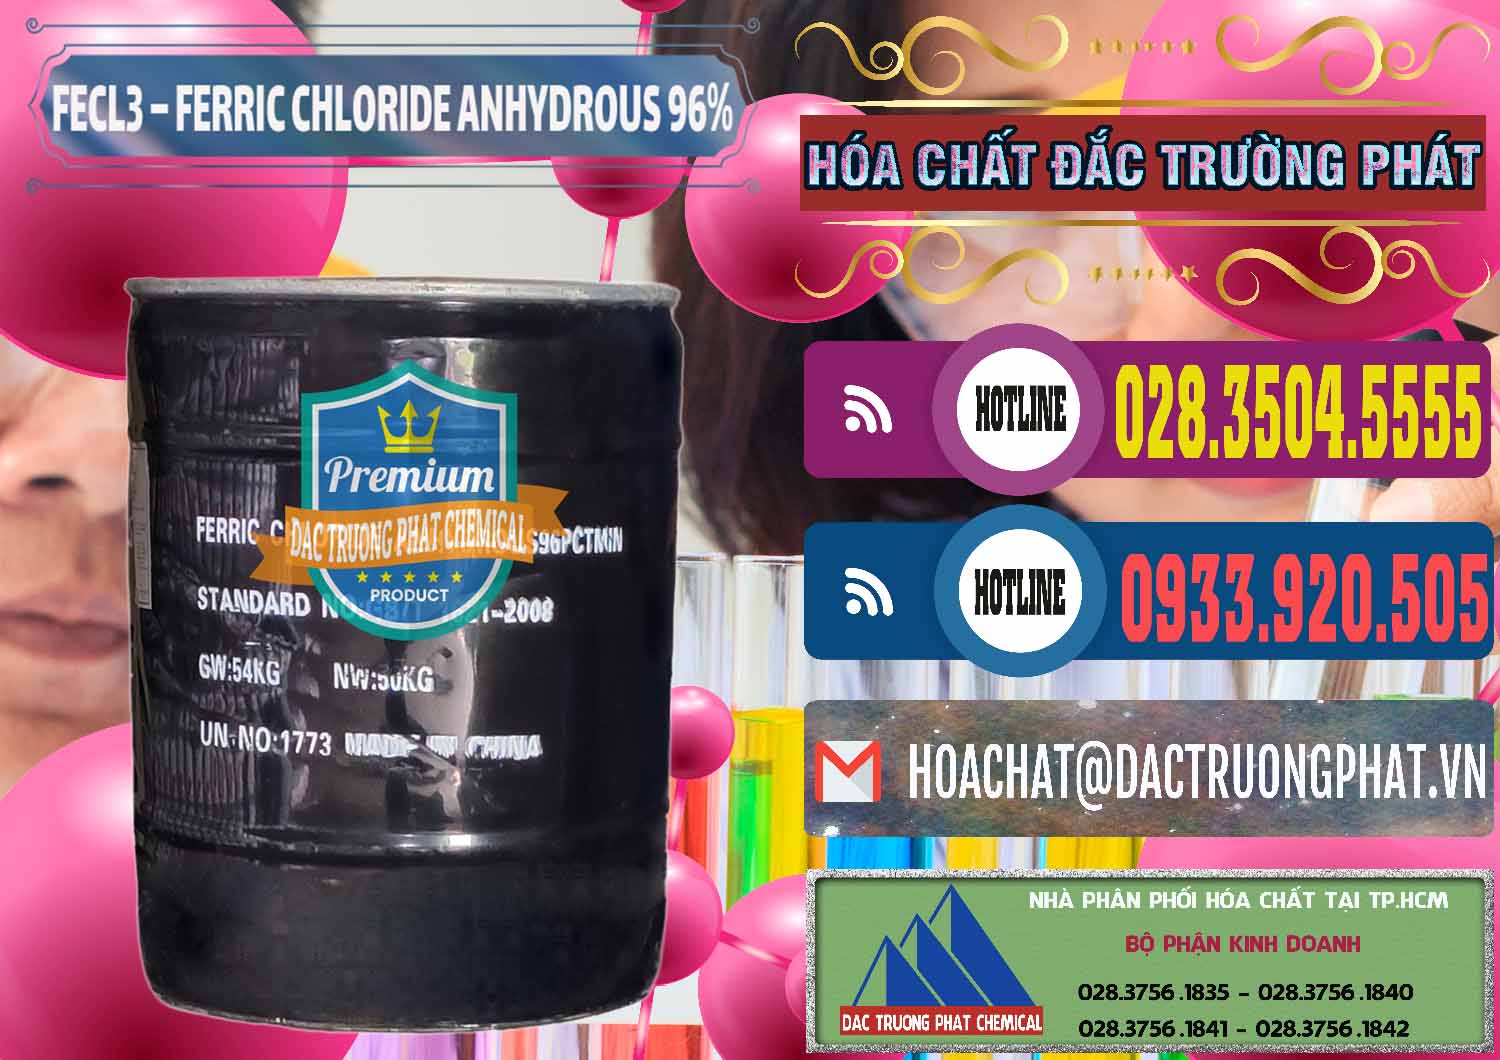 Nơi bán _ cung cấp FECL3 – Ferric Chloride Anhydrous 96% Trung Quốc China - 0065 - Chuyên phân phối - cung cấp hóa chất tại TP.HCM - muabanhoachat.com.vn